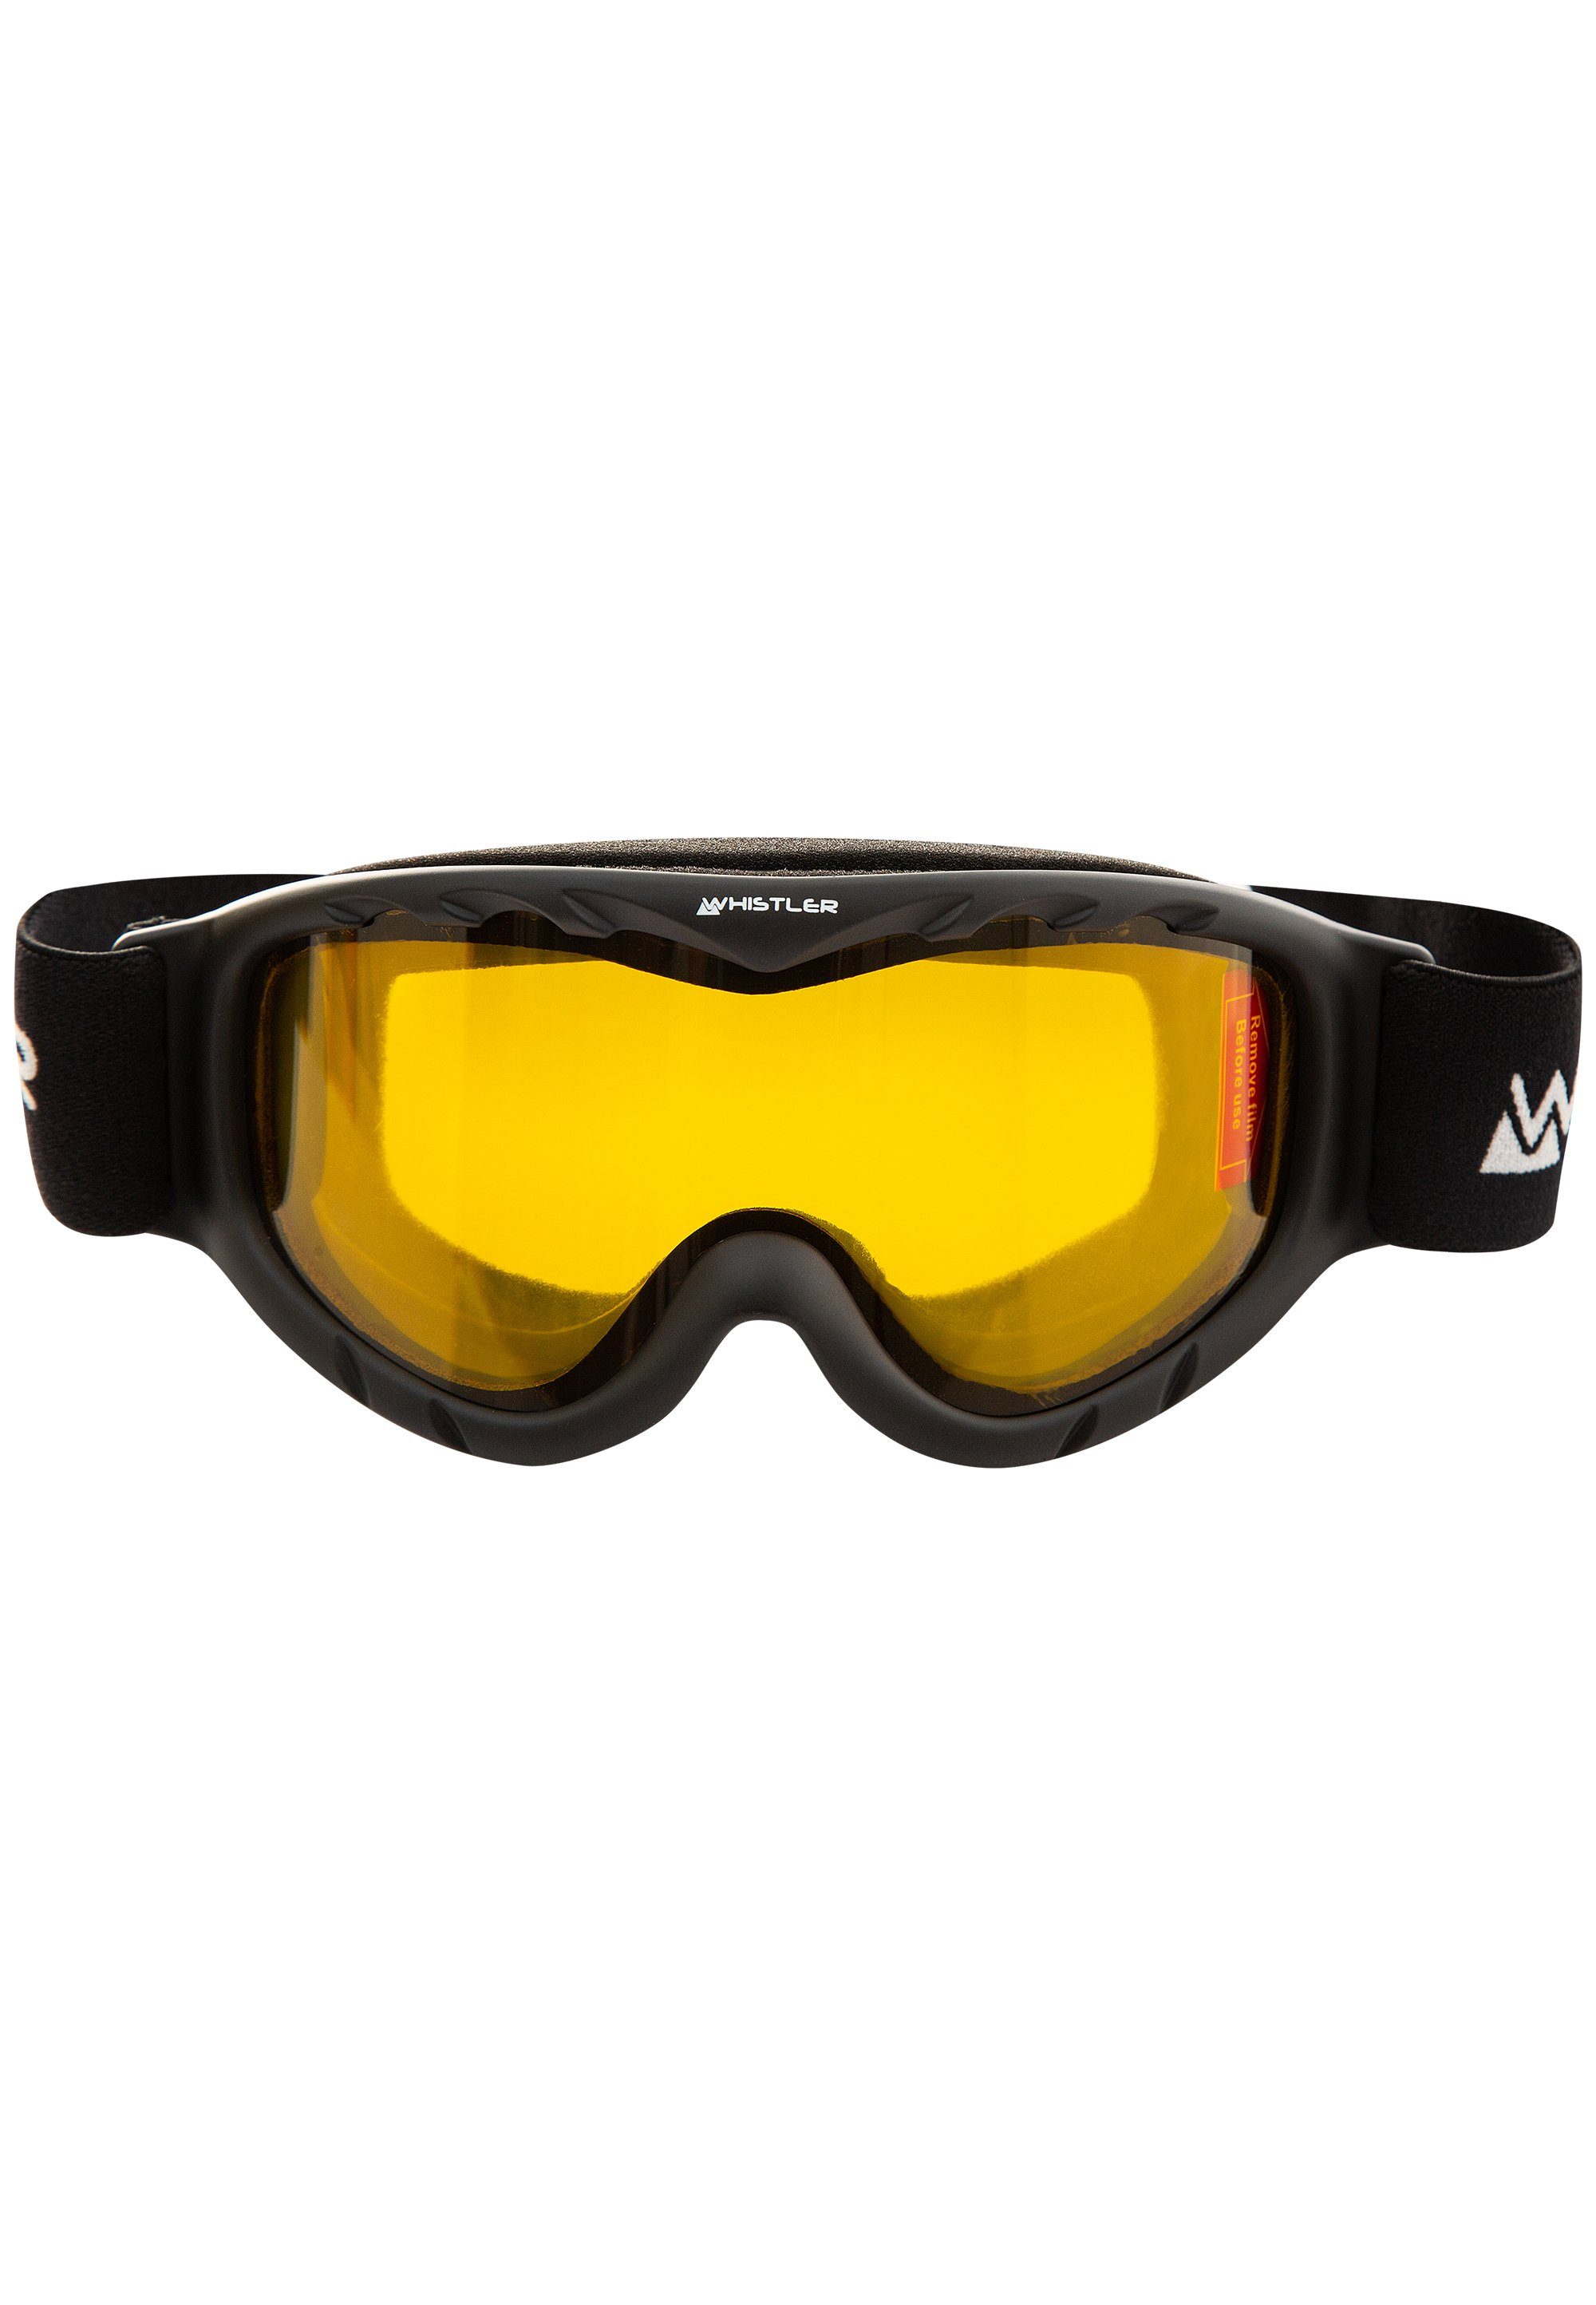 WHISTLER Skibrille WS300 Jr. Ski Goggle, mit Anti-Fog-Beschichtung schwarz | Brillen